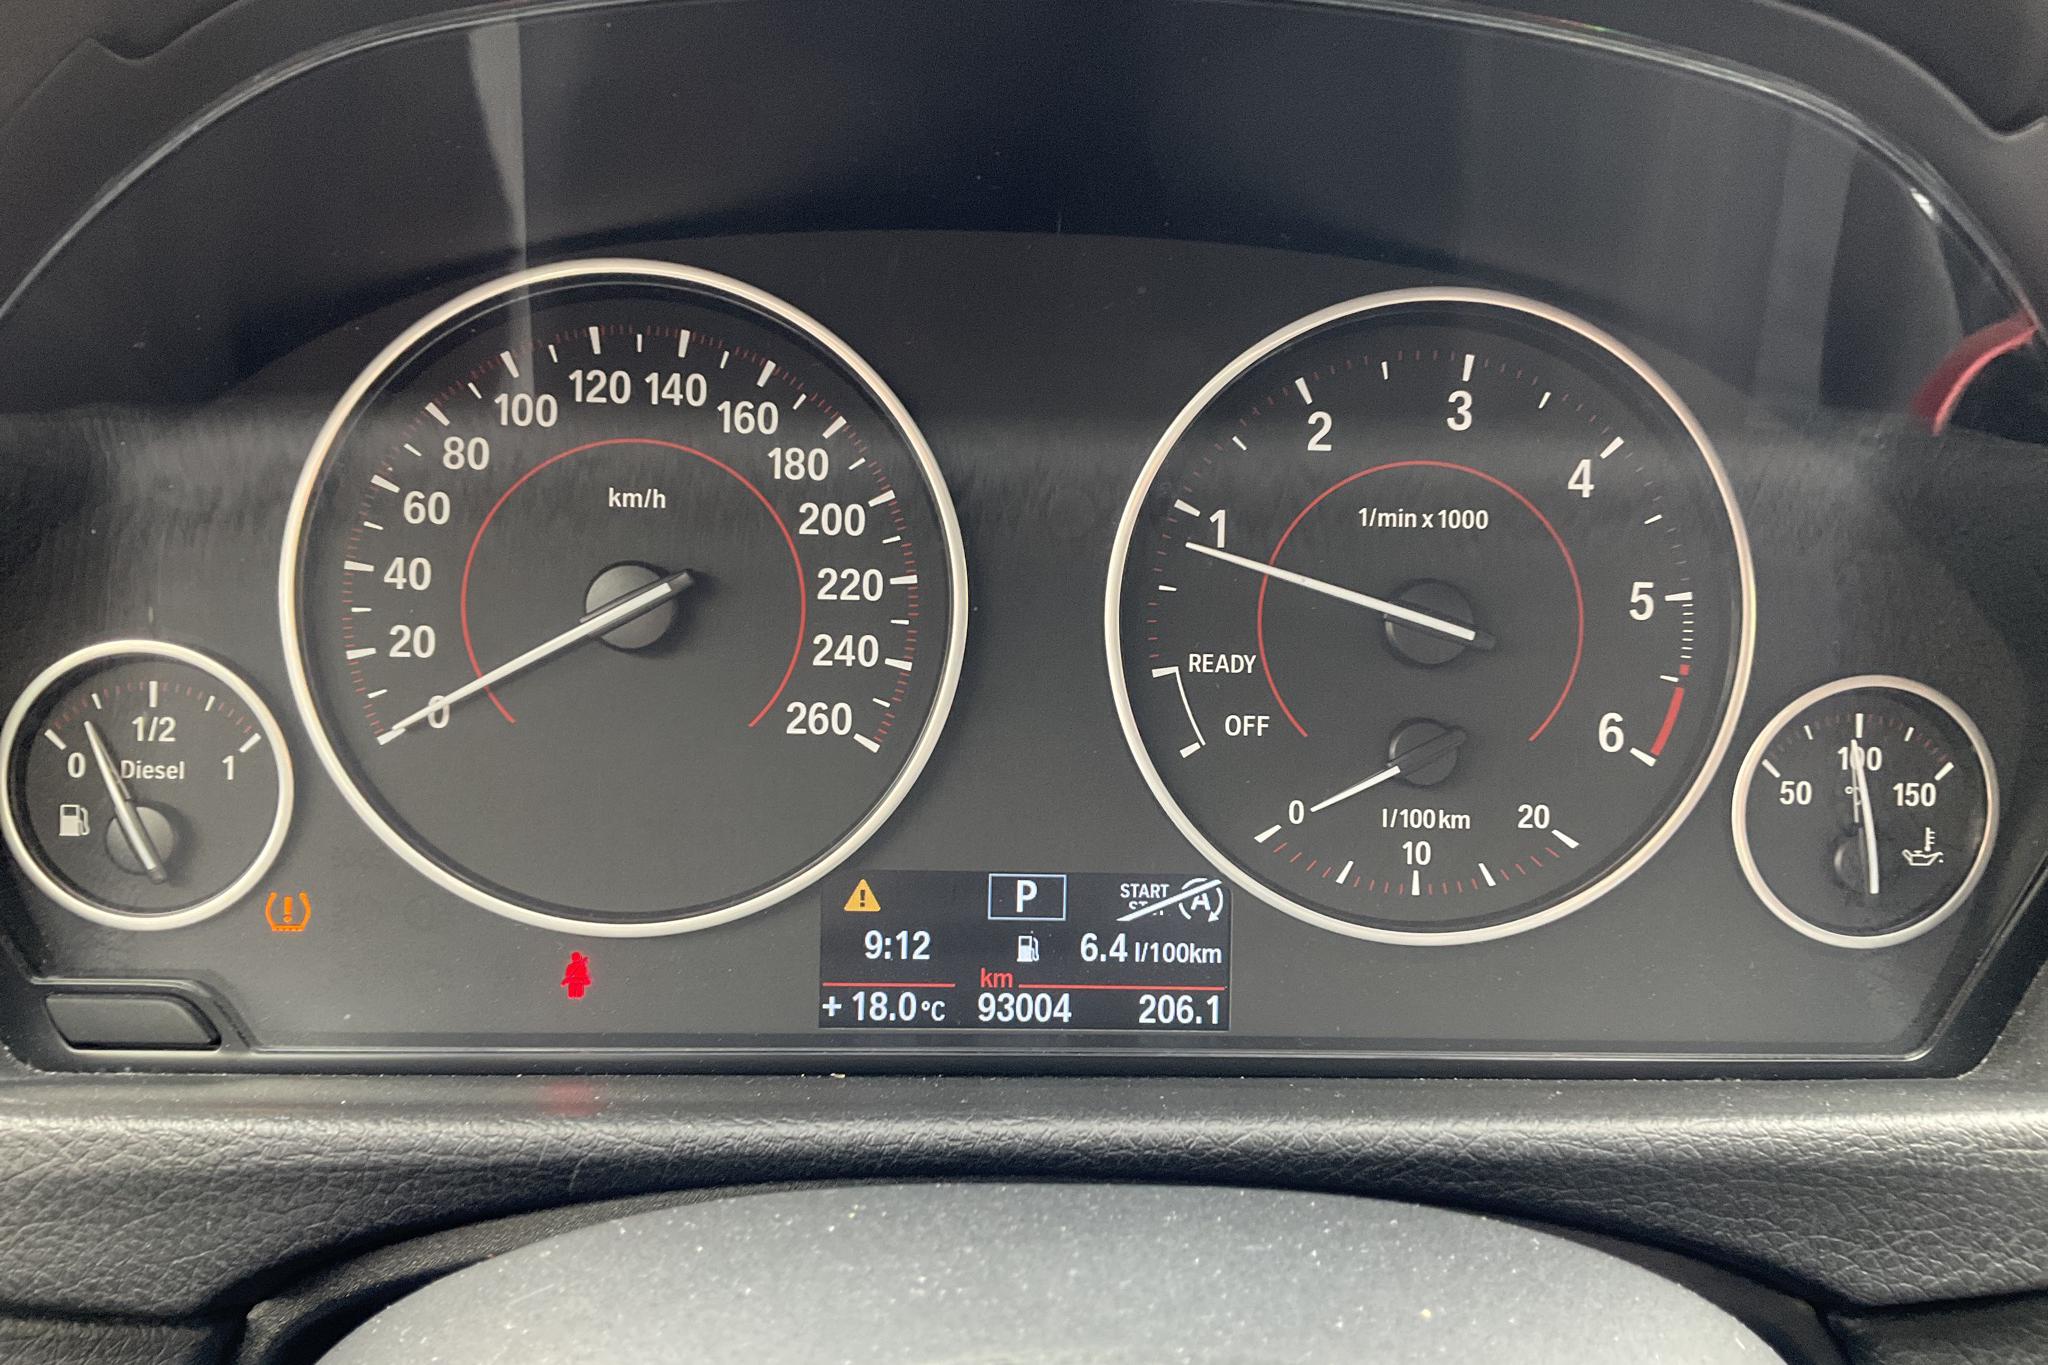 BMW 418d Gran Coupé, F36 (143hk) - 93 000 km - Automatic - white - 2015